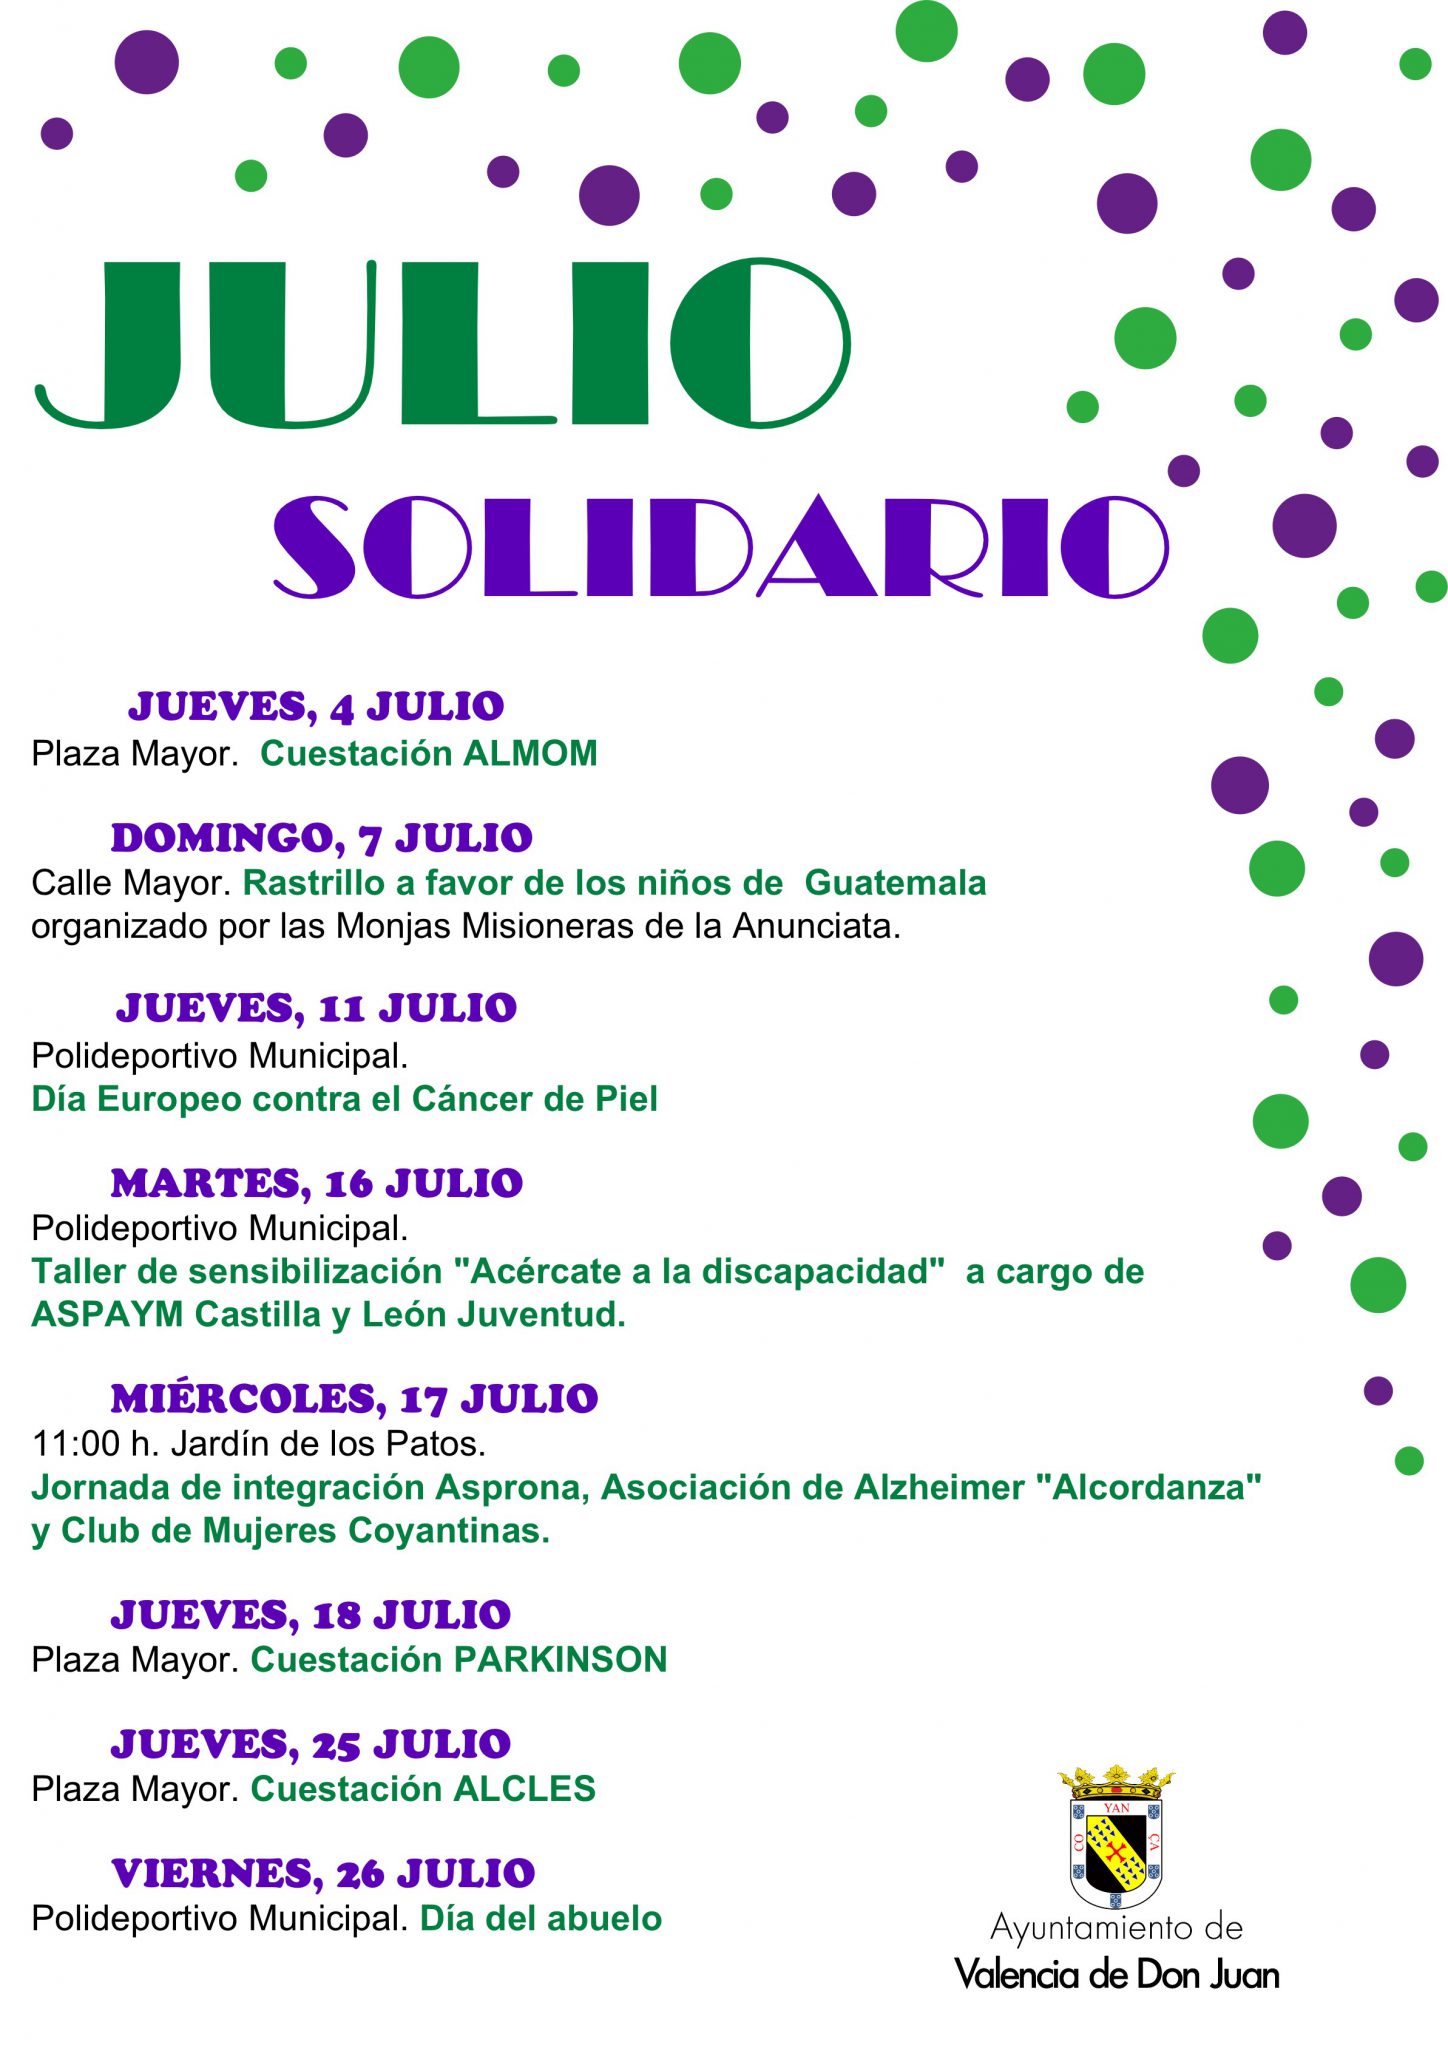 Julio Solidario